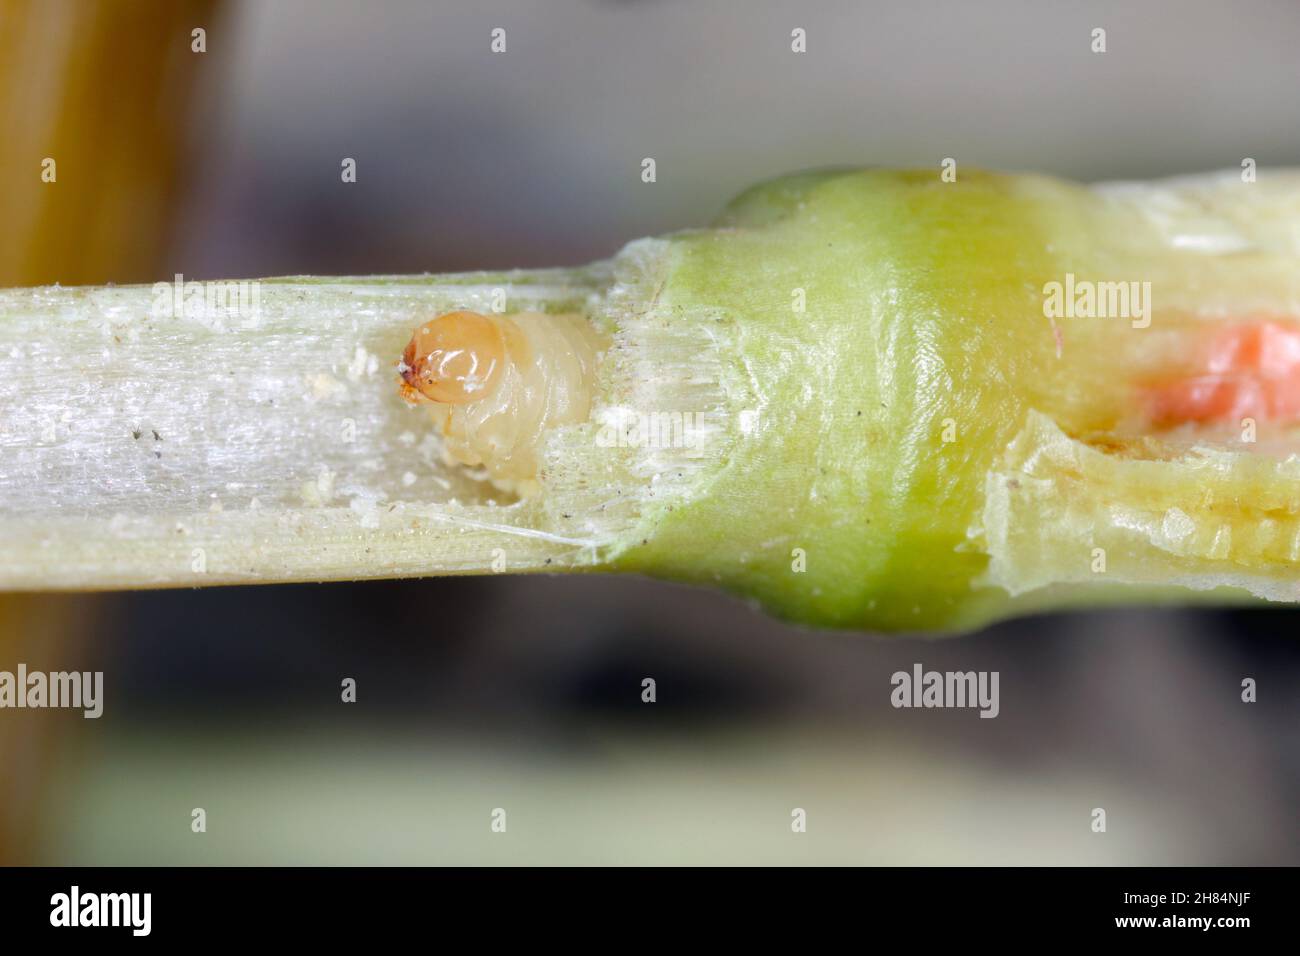 Larve de la tige de l'ensafeur Cephus pygmaeus (Cephidae) à l'intérieur de la tige des céréales.C'est un ravageur important des céréales. Banque D'Images